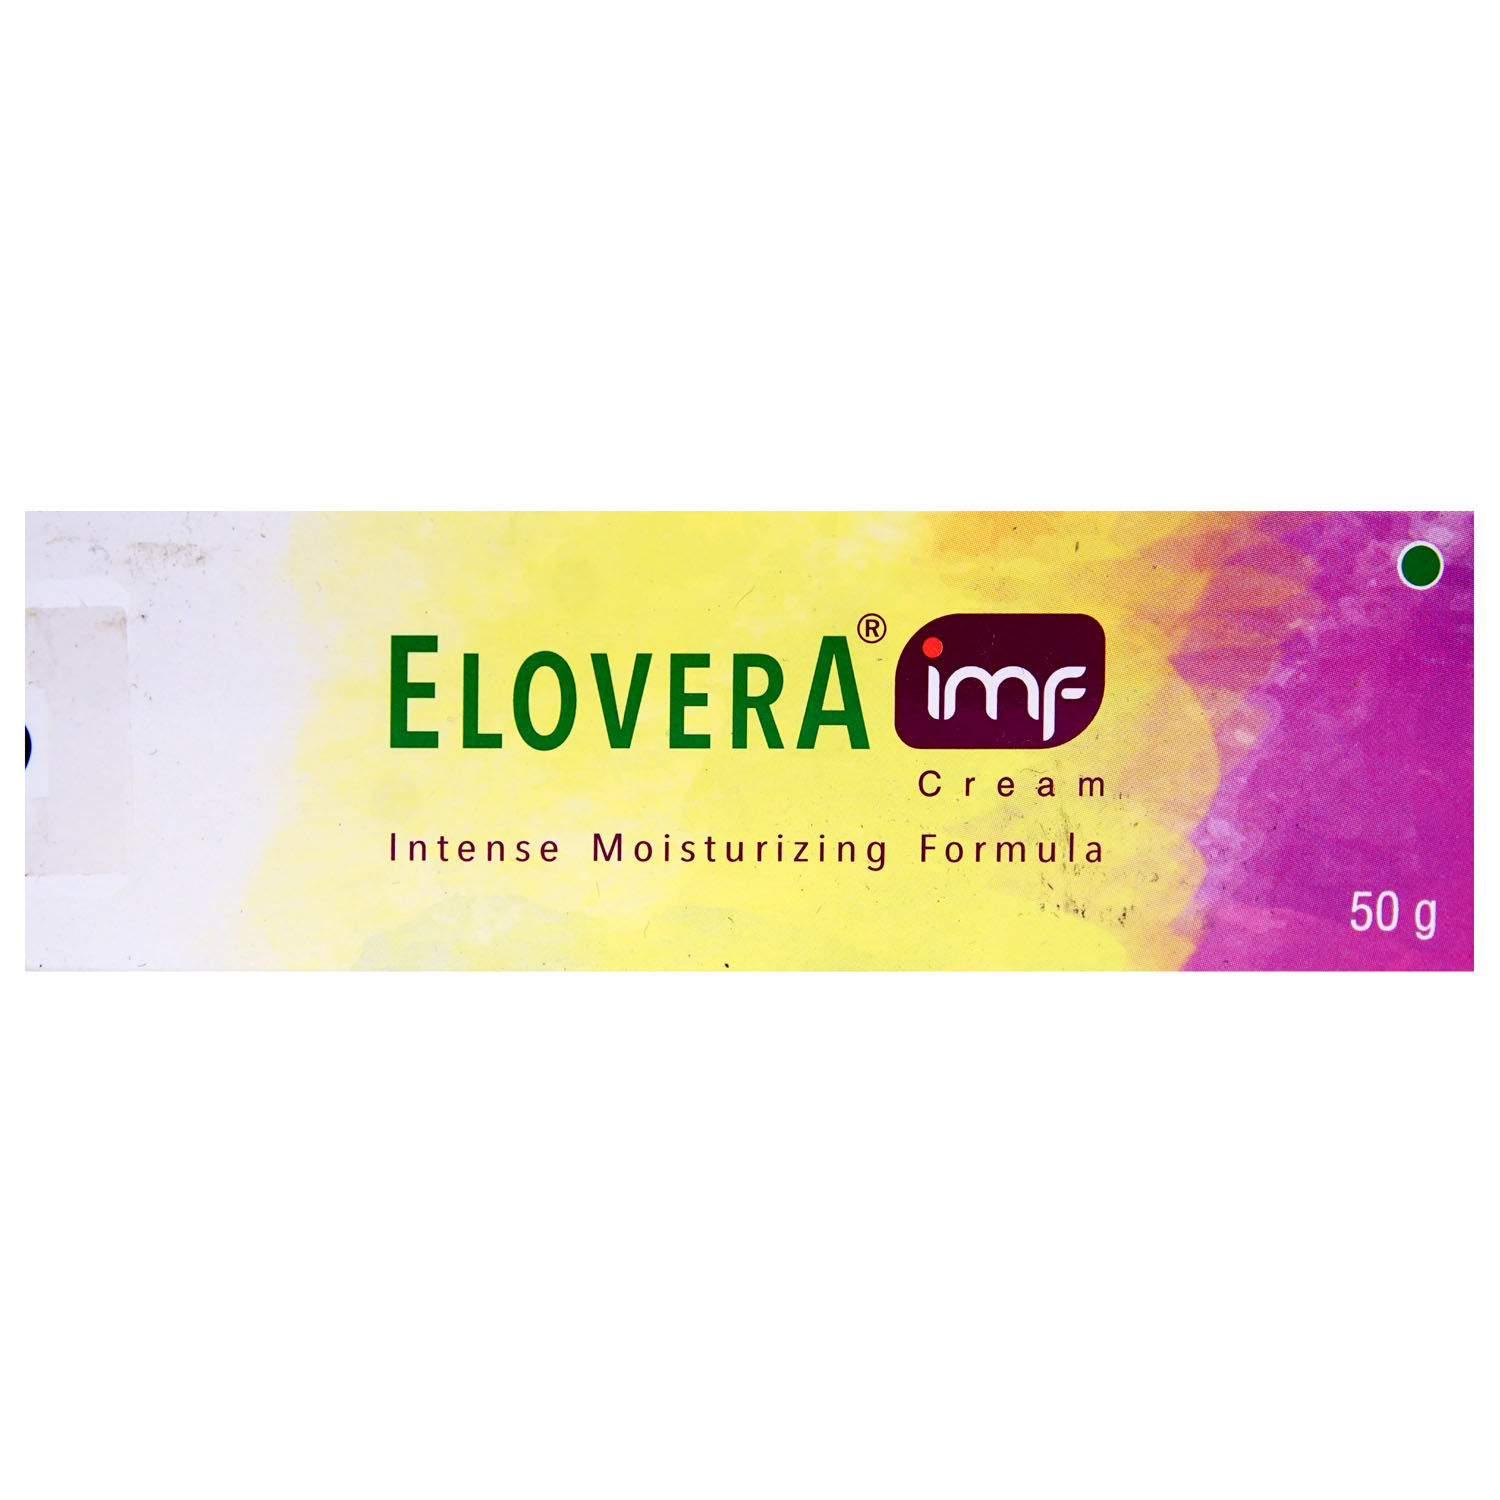 Elovera Imf Cream 50 gm, Pack of 1 